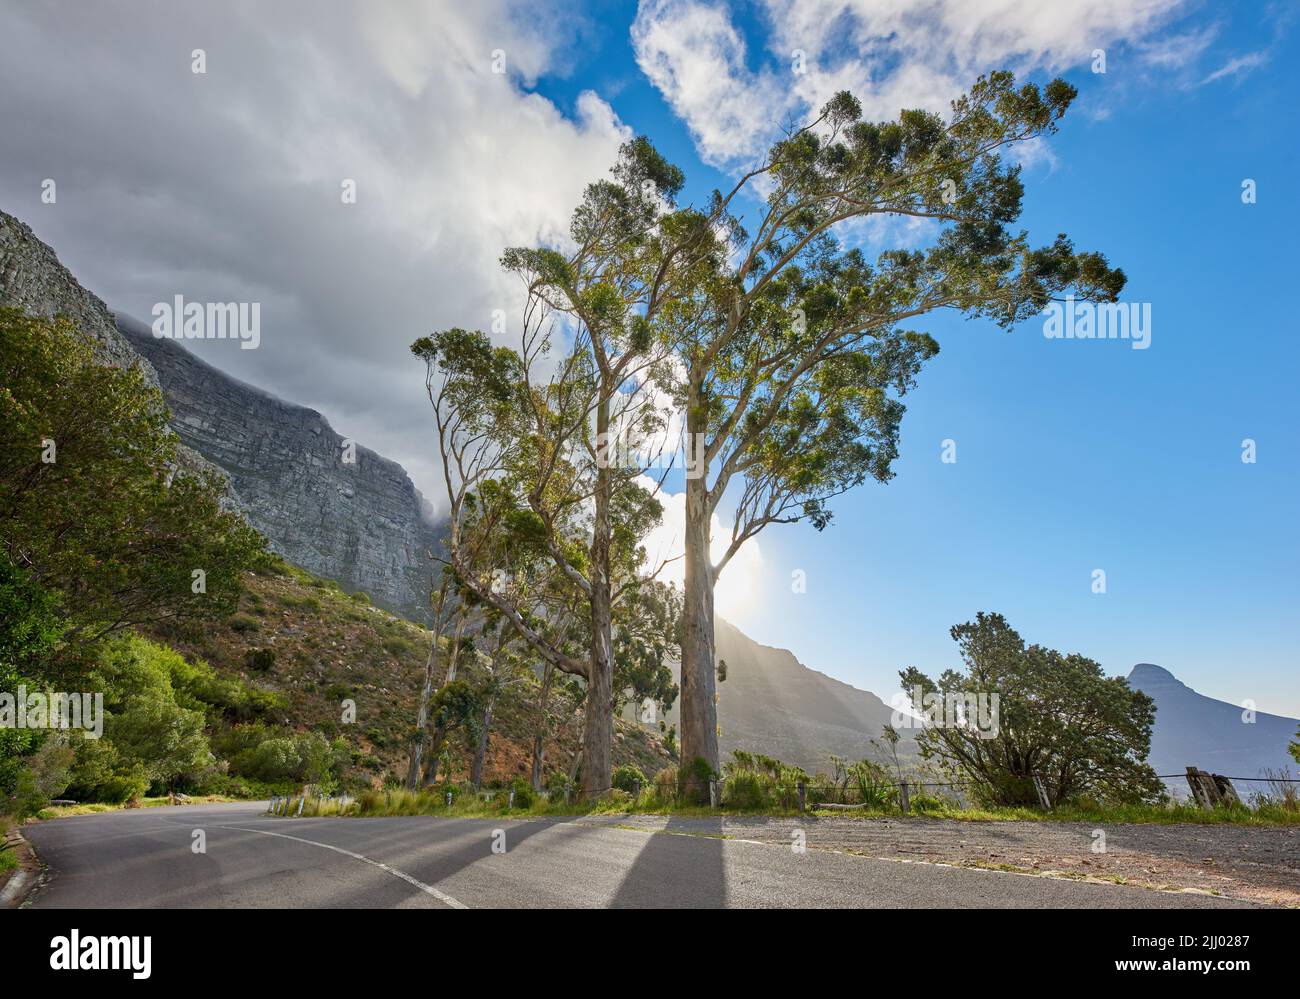 Eine Straße, die an einem sonnigen Morgen zum Tafelberg in Kapstadt, Südafrika, führt, gegen einen blauen Himmel. Eine Autobahn entlang eines friedlichen Berges Stockfoto